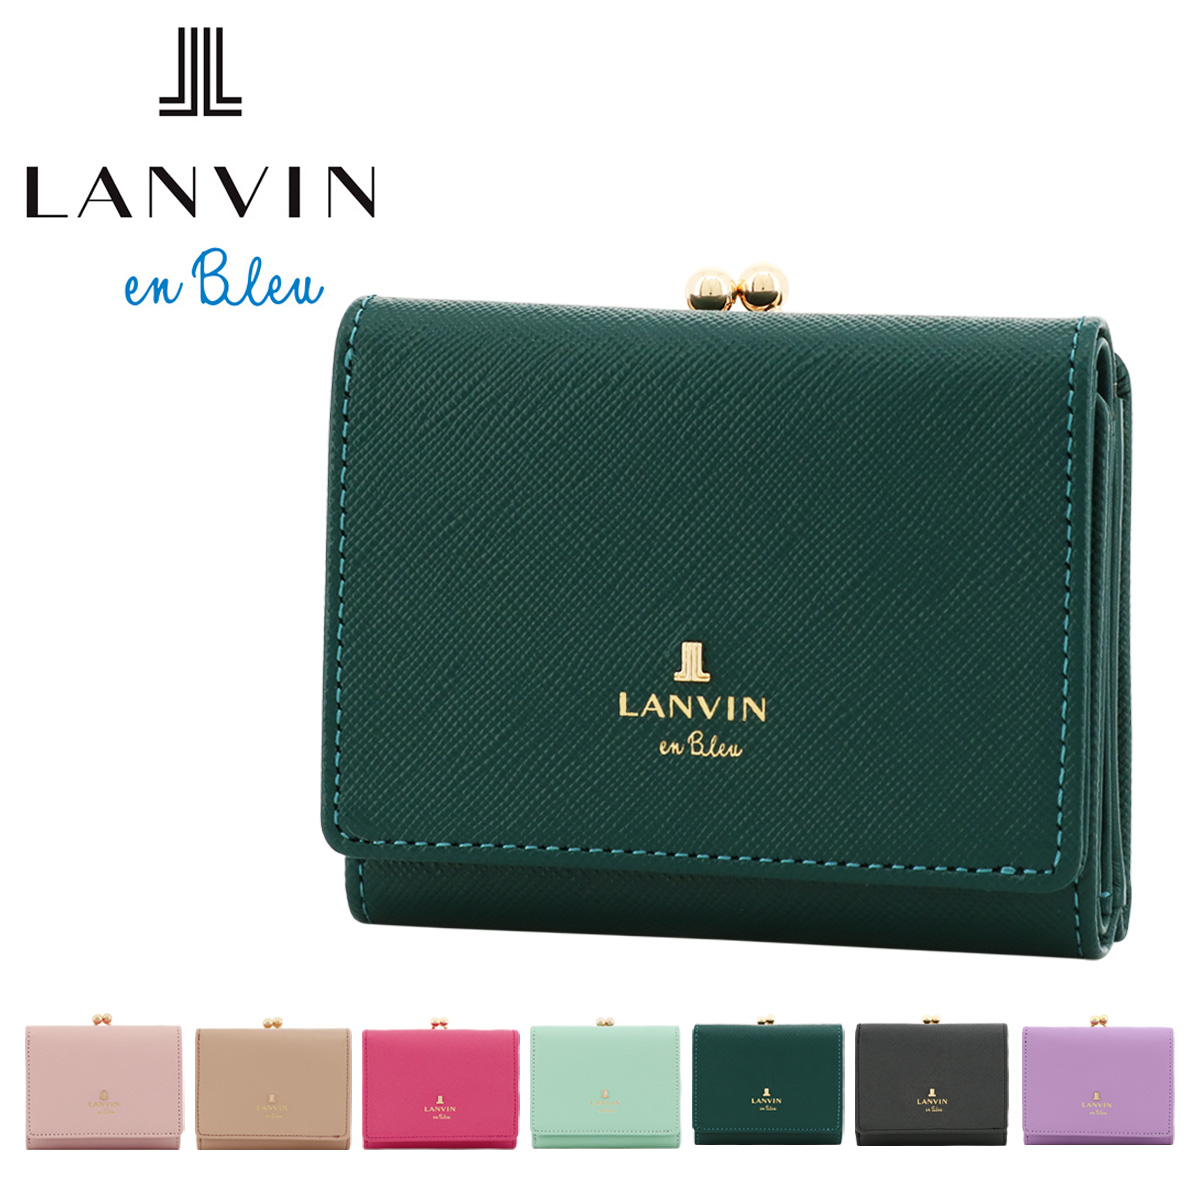 LANVIN リュクサンブール 口金二つ折り財布 482814 * LANVIN en Bleu レディース二つ折り財布の商品画像